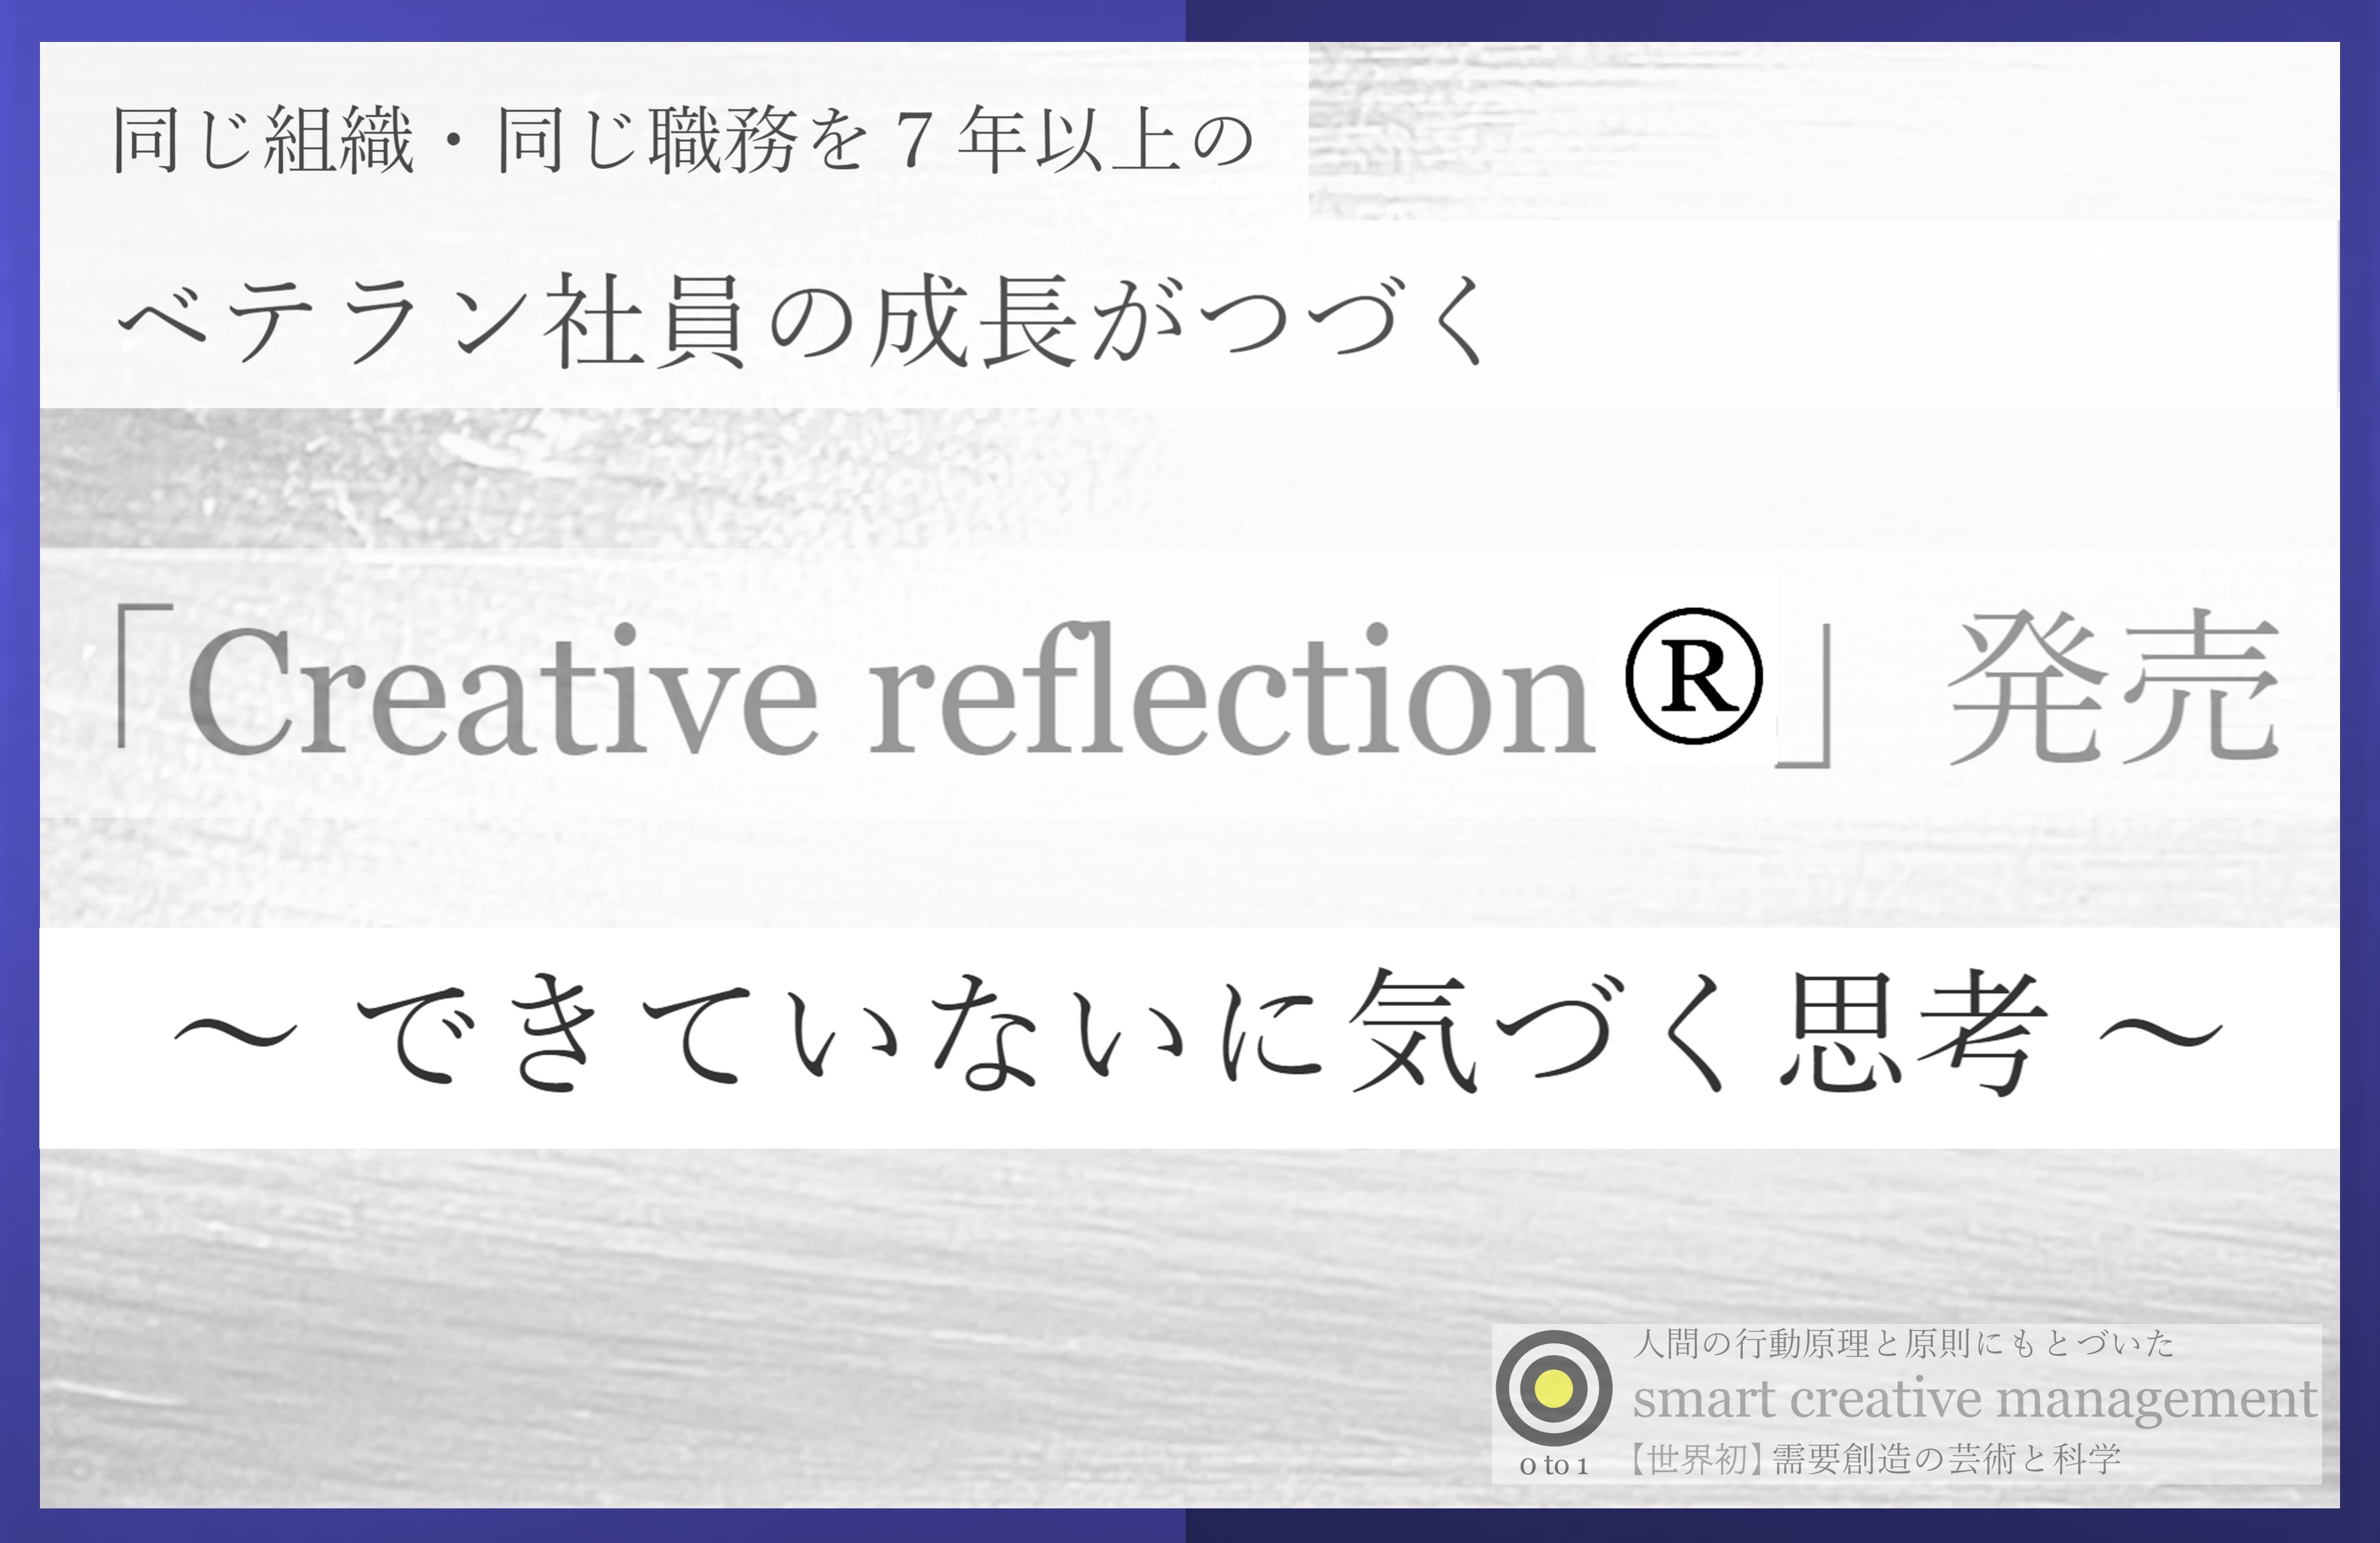 日本初 ベテラン社員の成長がつづく Creative Reflection 発売 需要創造の科学 Smart Creative Management のプレスリリース